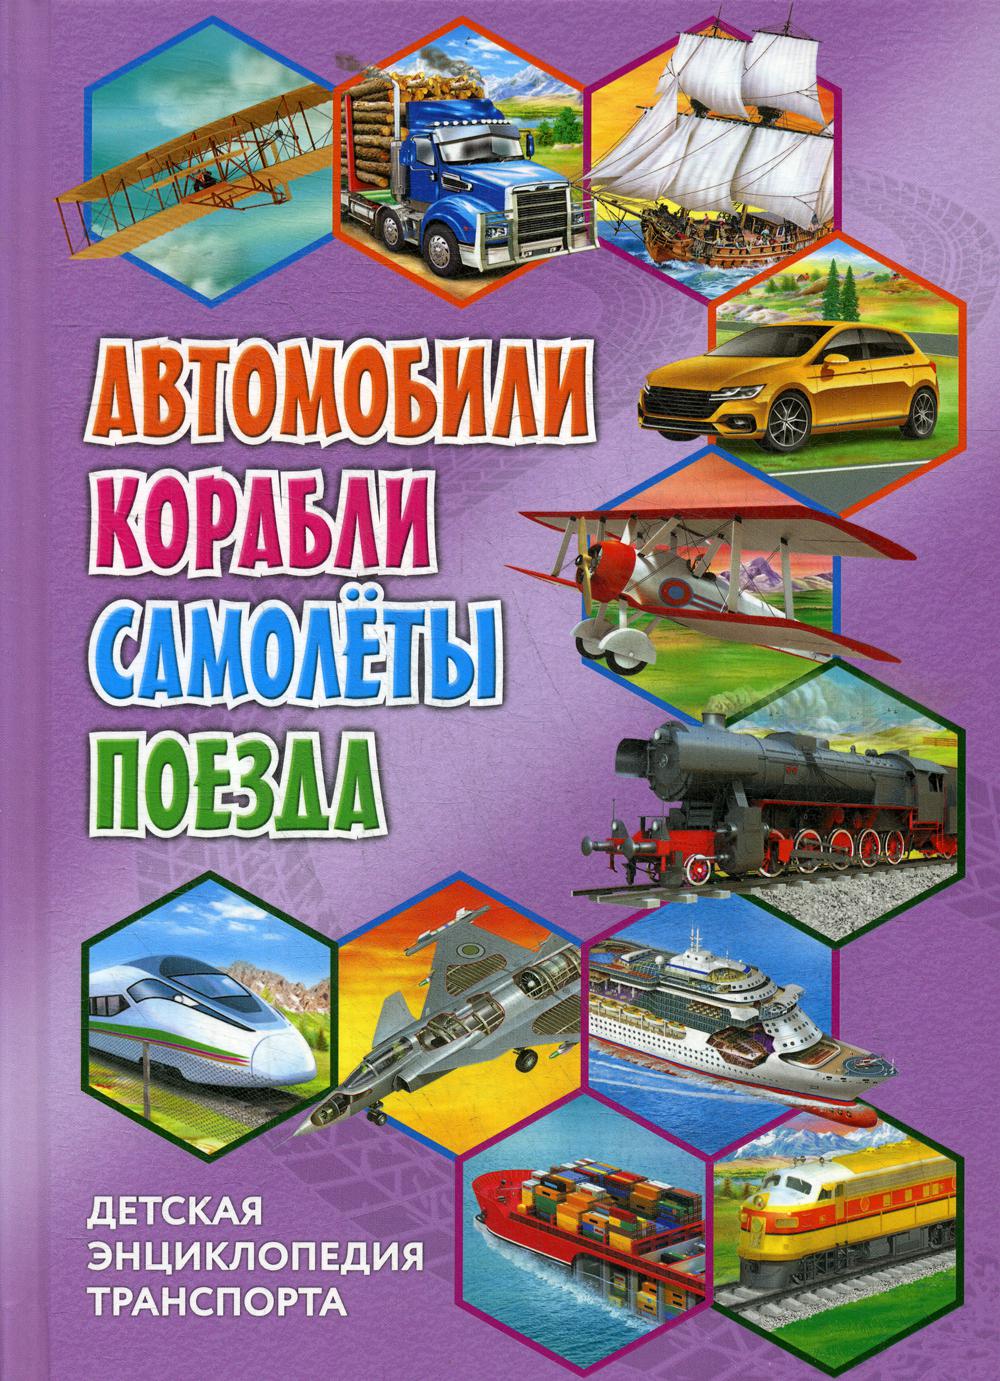 фото Книга детская энциклопедия транспорта. автомобили, корабли, самолеты, поезда владис